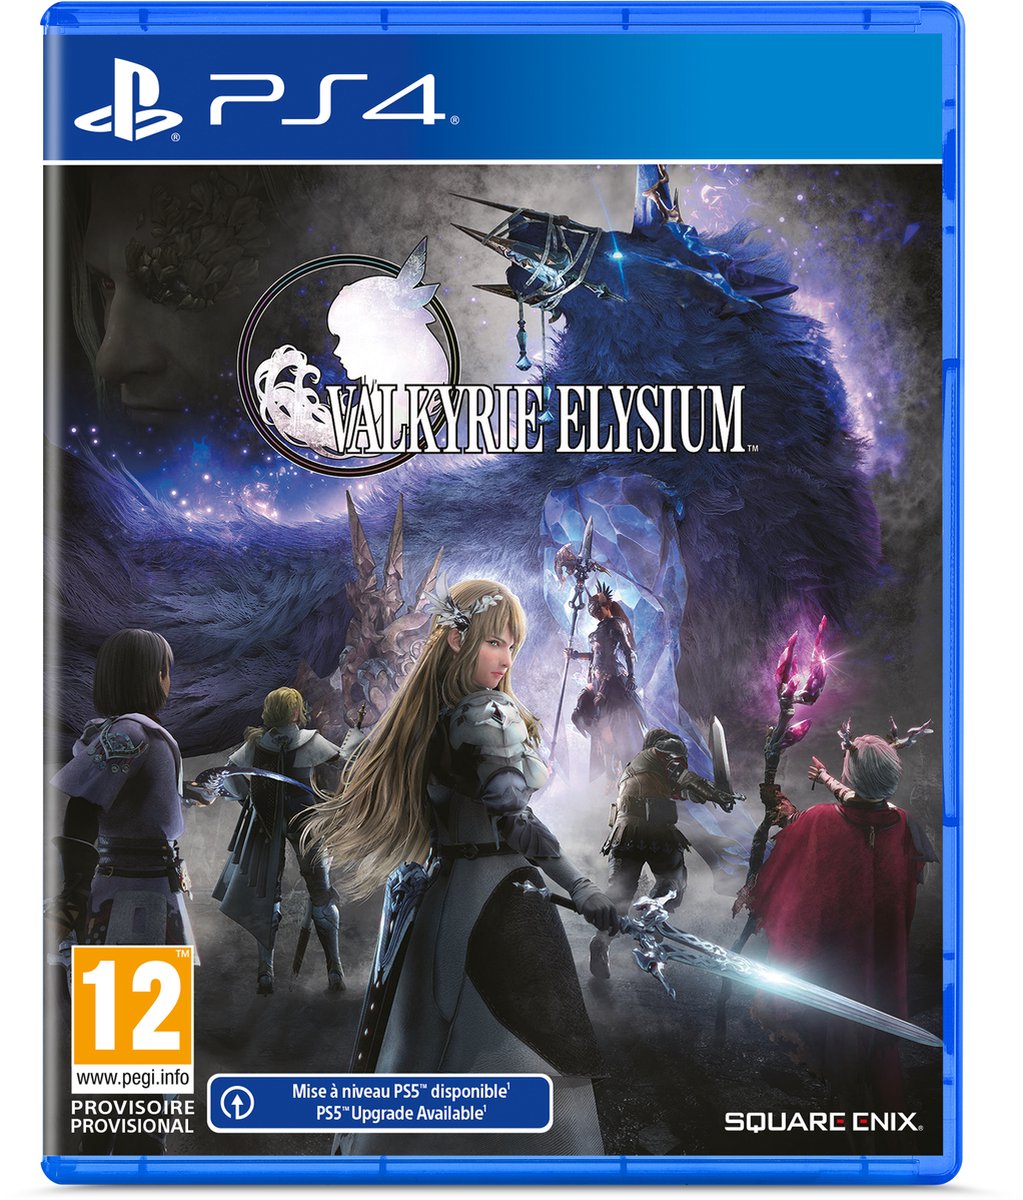 Valkyrie Elysium (PS4), Square Enix